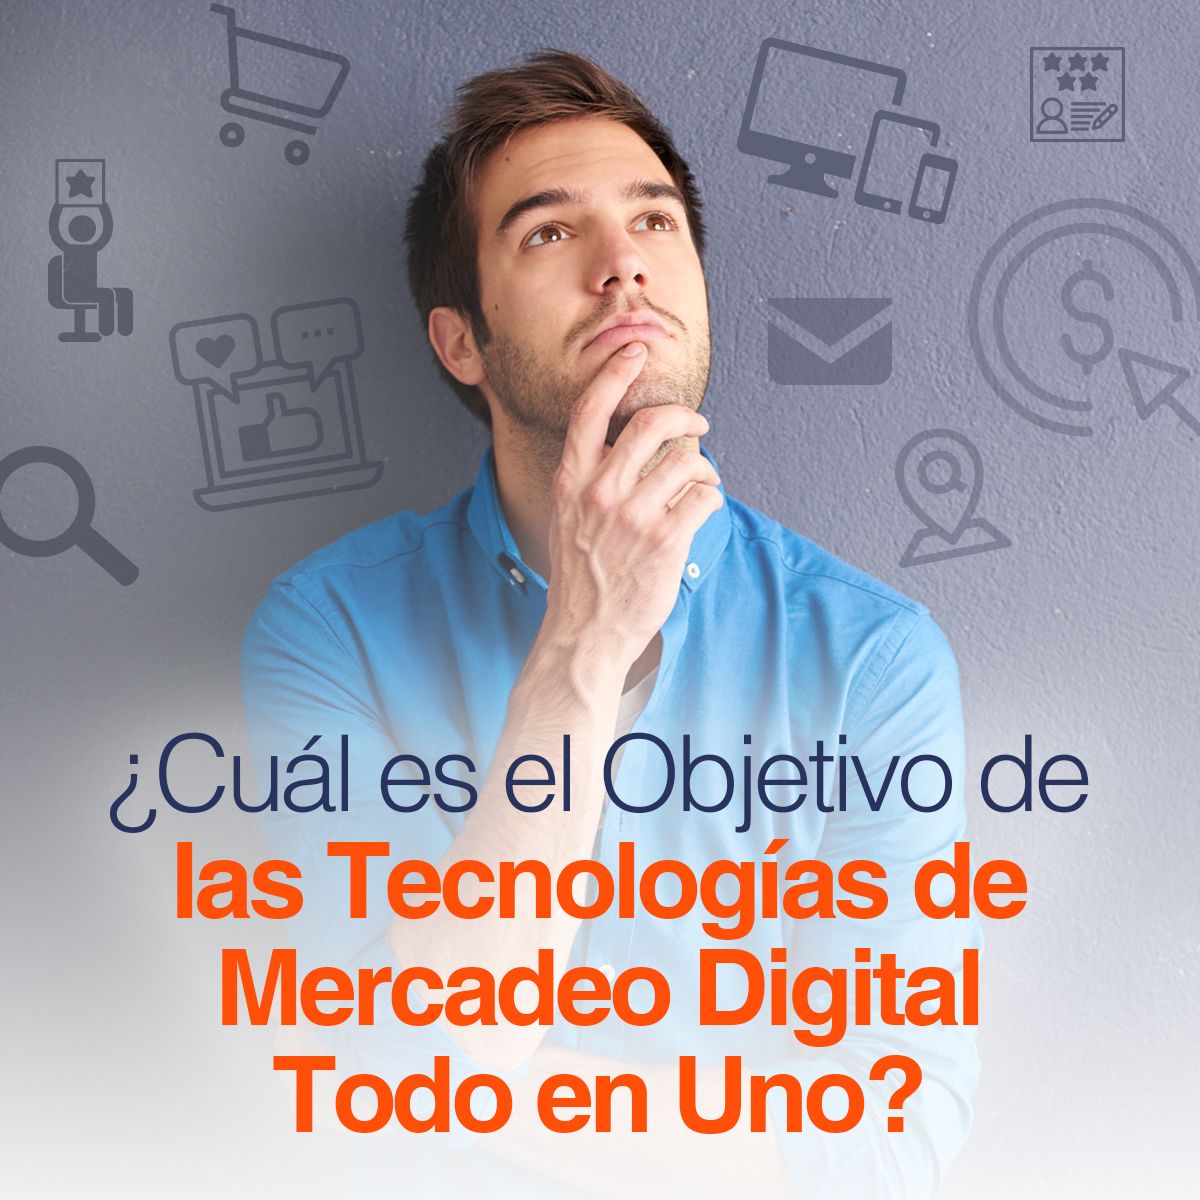 ¿Cuál es el Objetivo de las Tecnologías de Mercadeo Digital Todo en Uno?